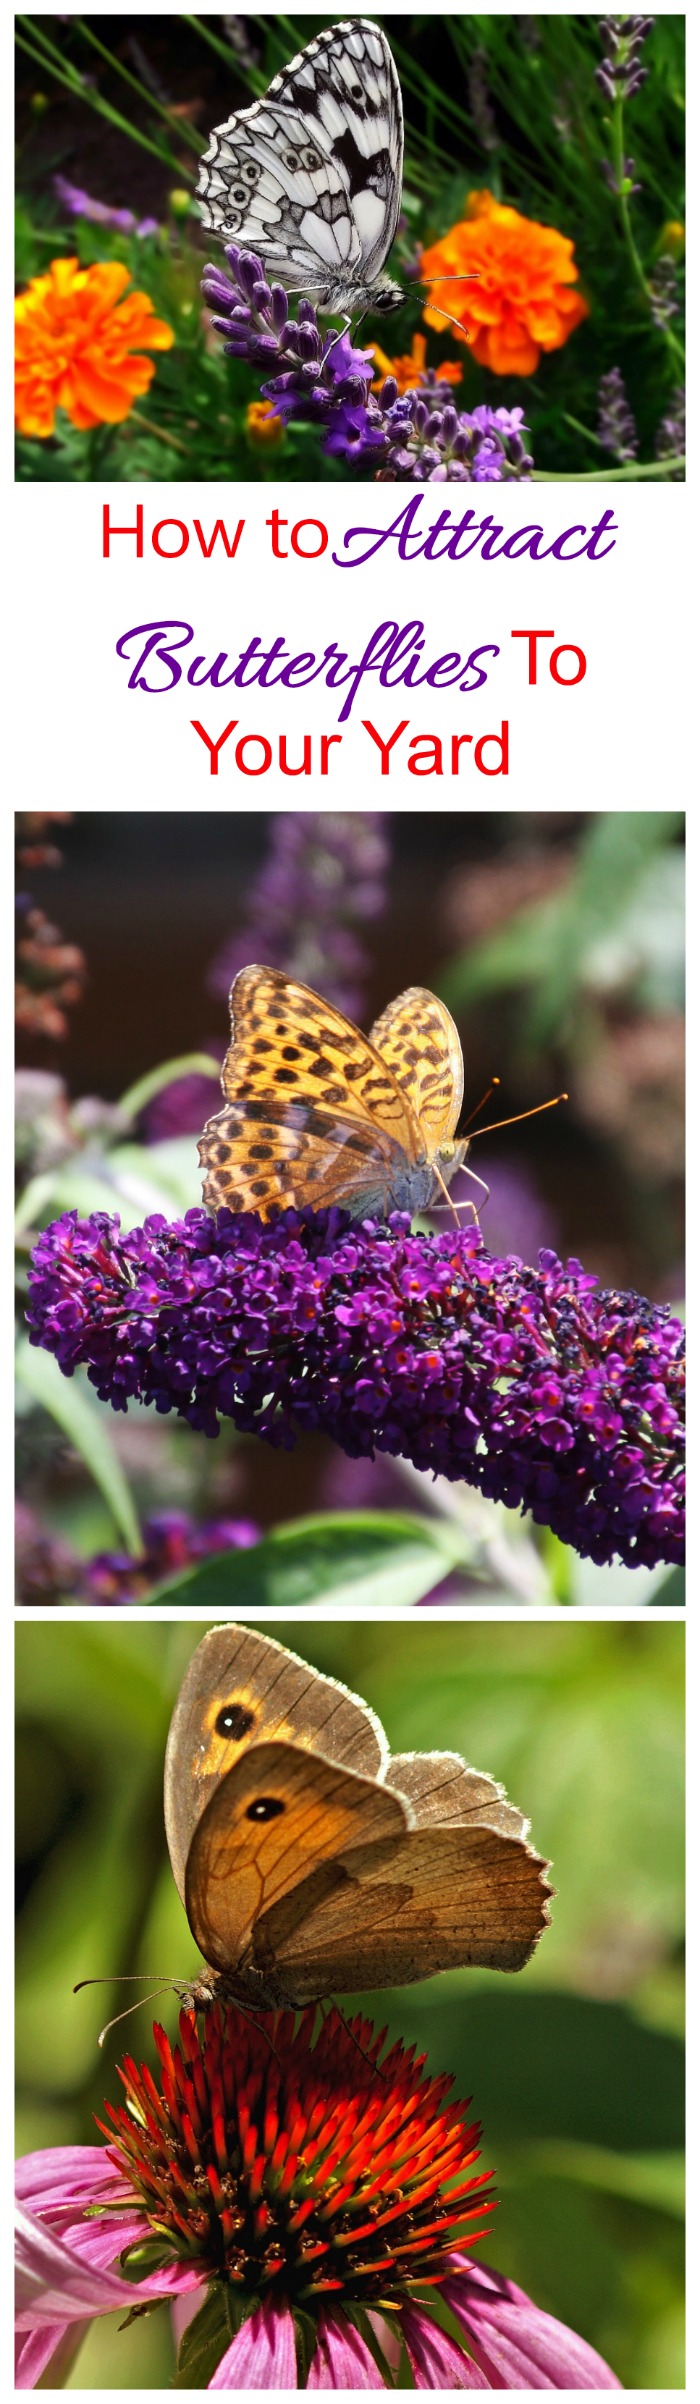 Atreure papallones: consells per atraure papallones al vostre jardí com un imant